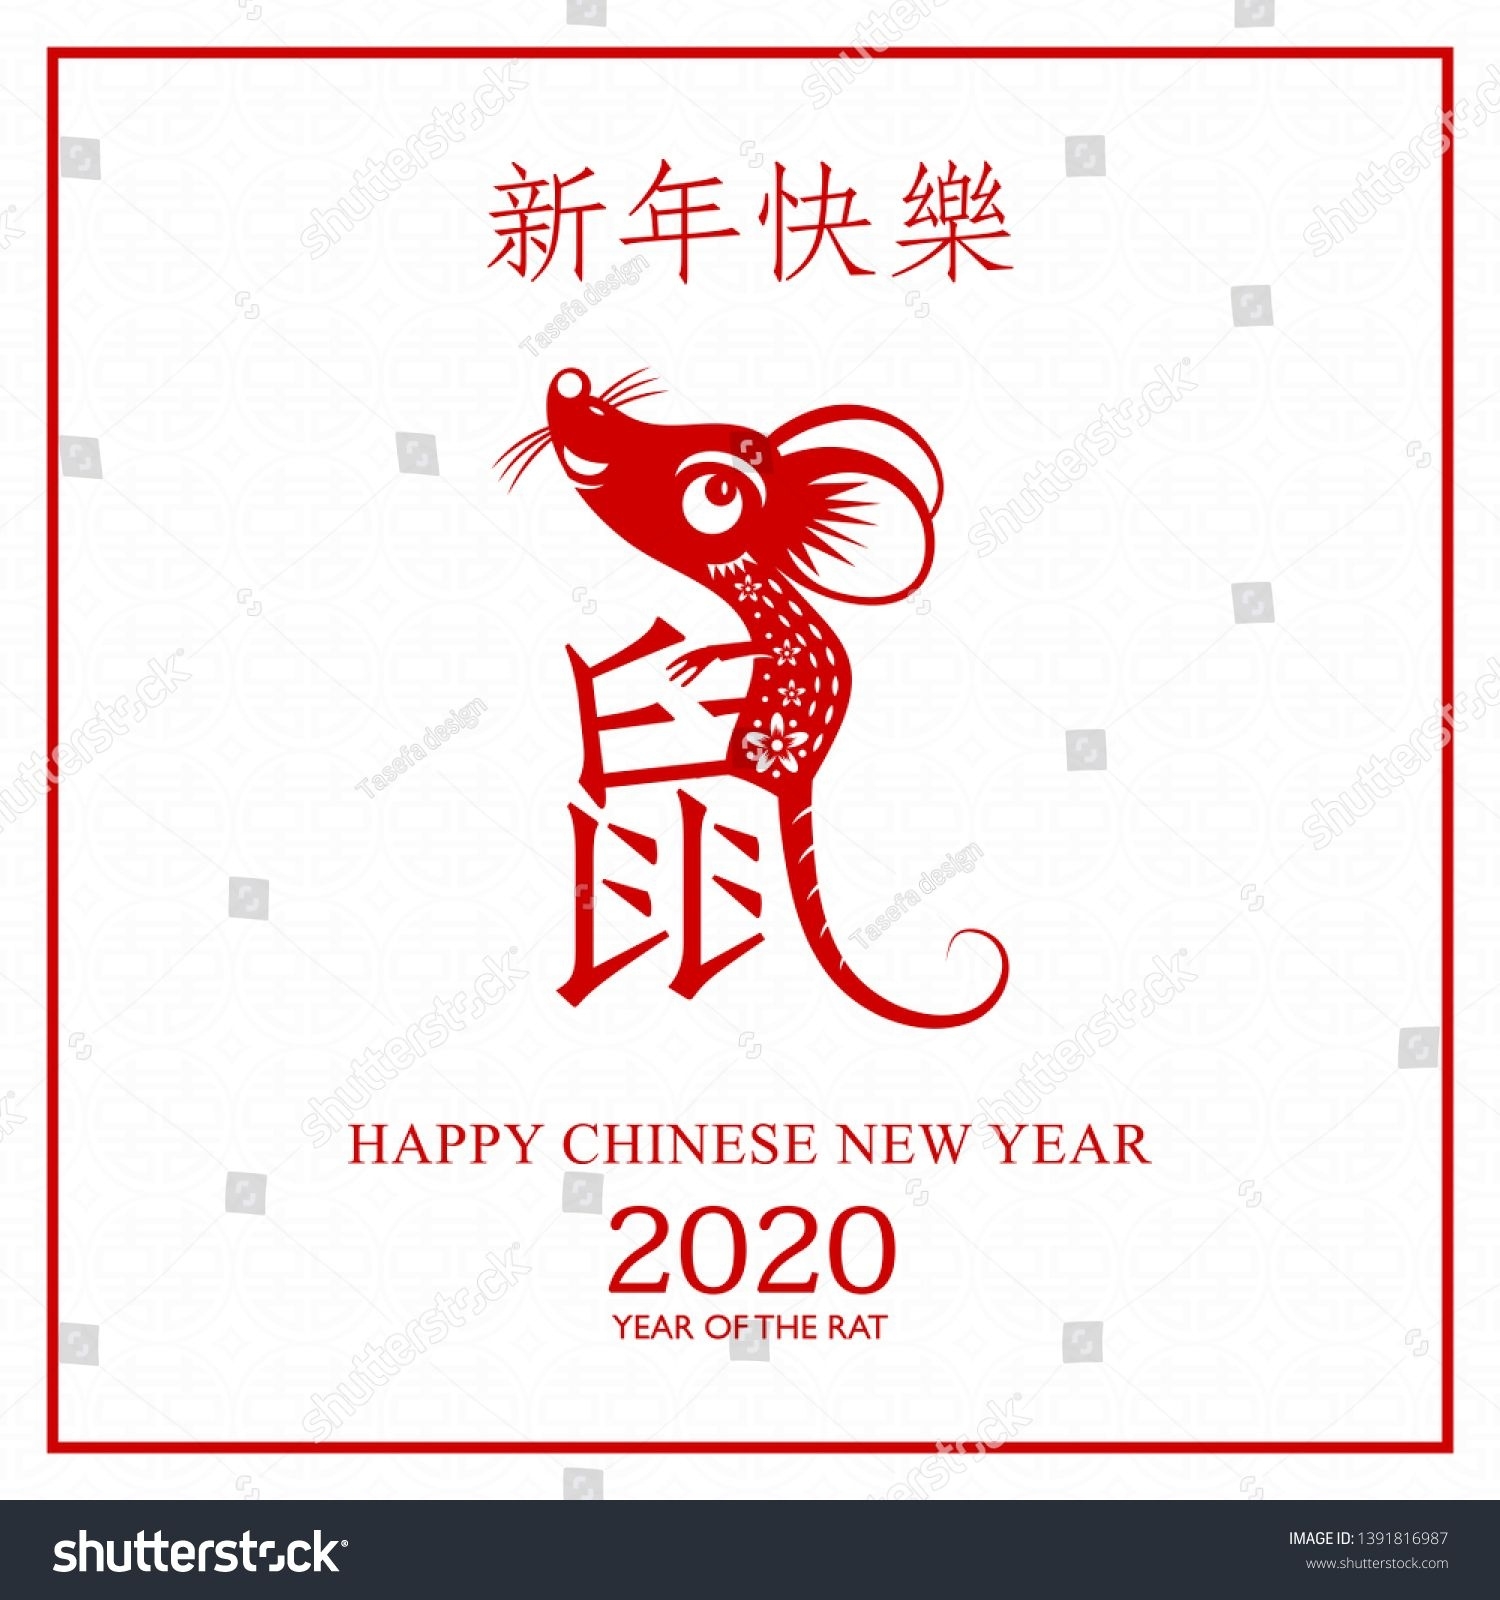 Pin On Chinese New Year Dashing Understanding The Zodiac Chart Kids Chinese New Year